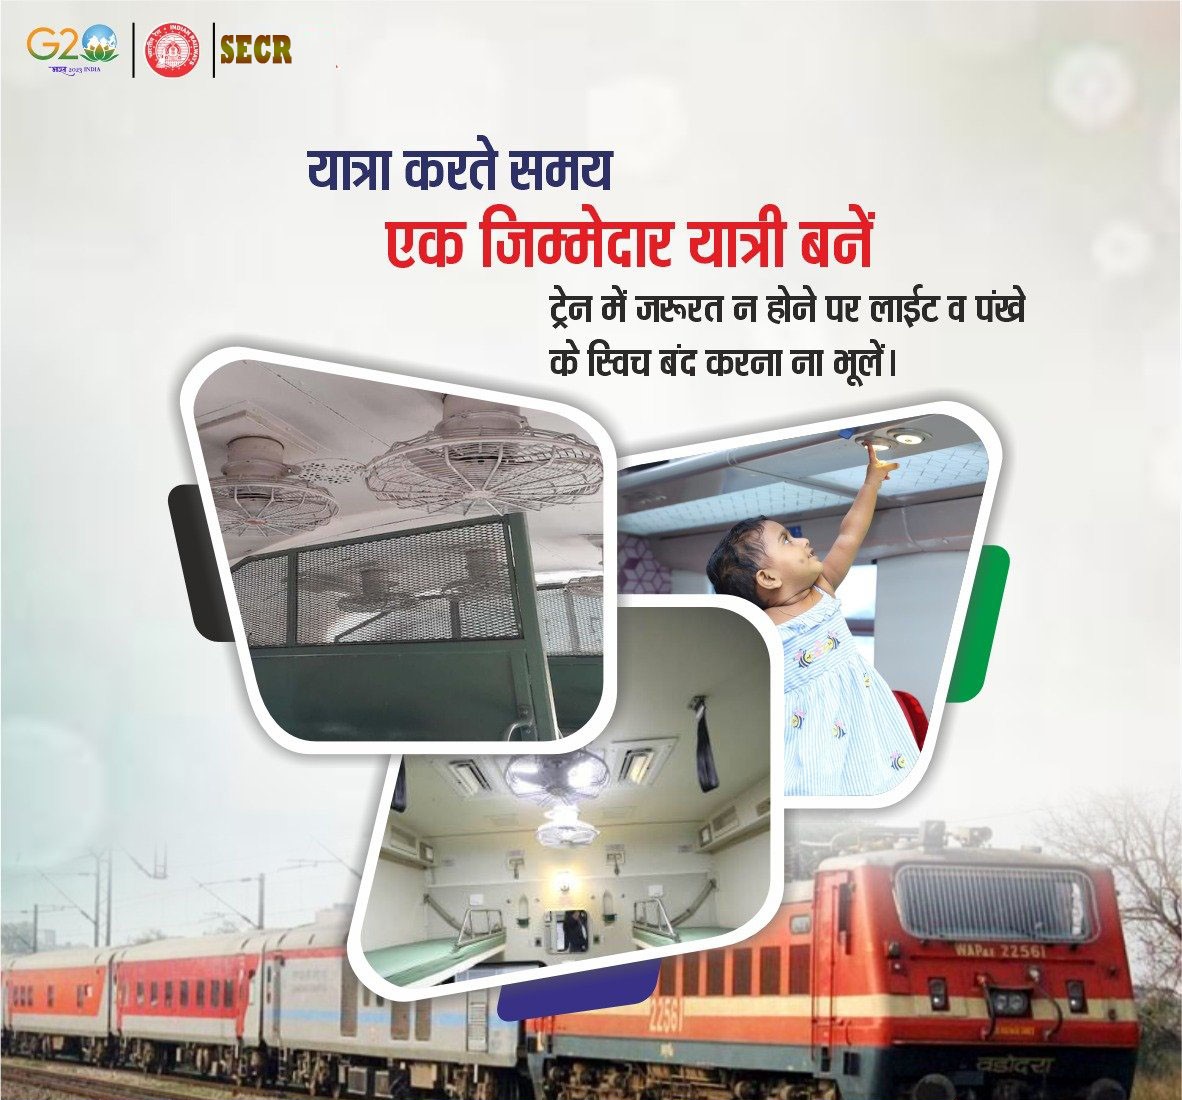 ऊर्जा की बचत करें ! जरुरत न होने पर ट्रेन के लाईट व पंखे बंद रखें l  #IndianRailways #SaveEnergy